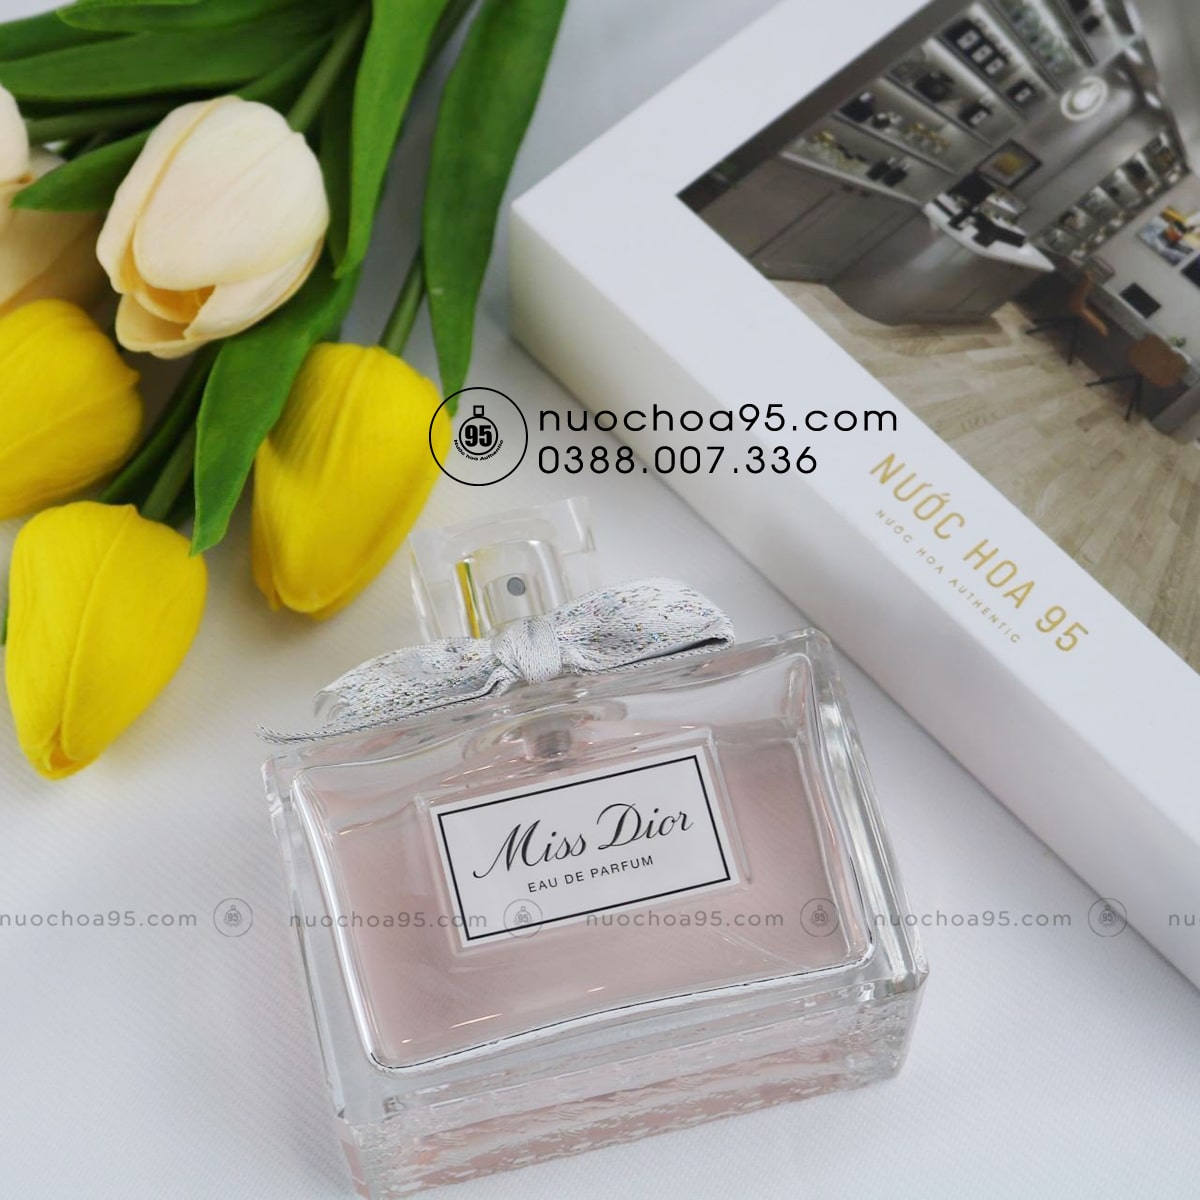 Nước hoa Miss Dior Eau De Parfum 2021 chính hãng tại Hà Nội